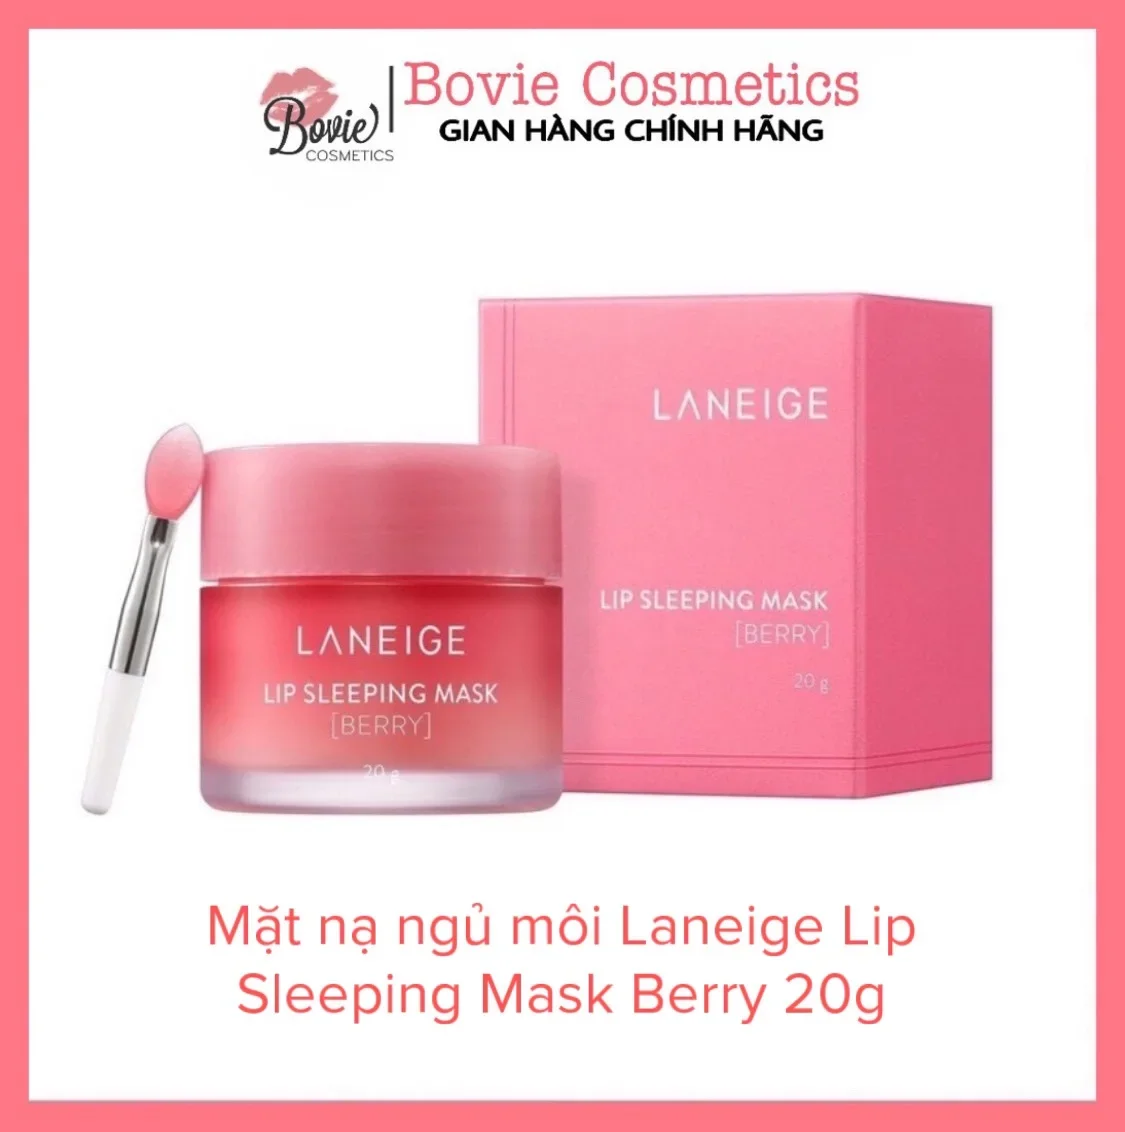 Mặt nạ ngủ môi Laneige Lip Sleeping Mask Berry 20g